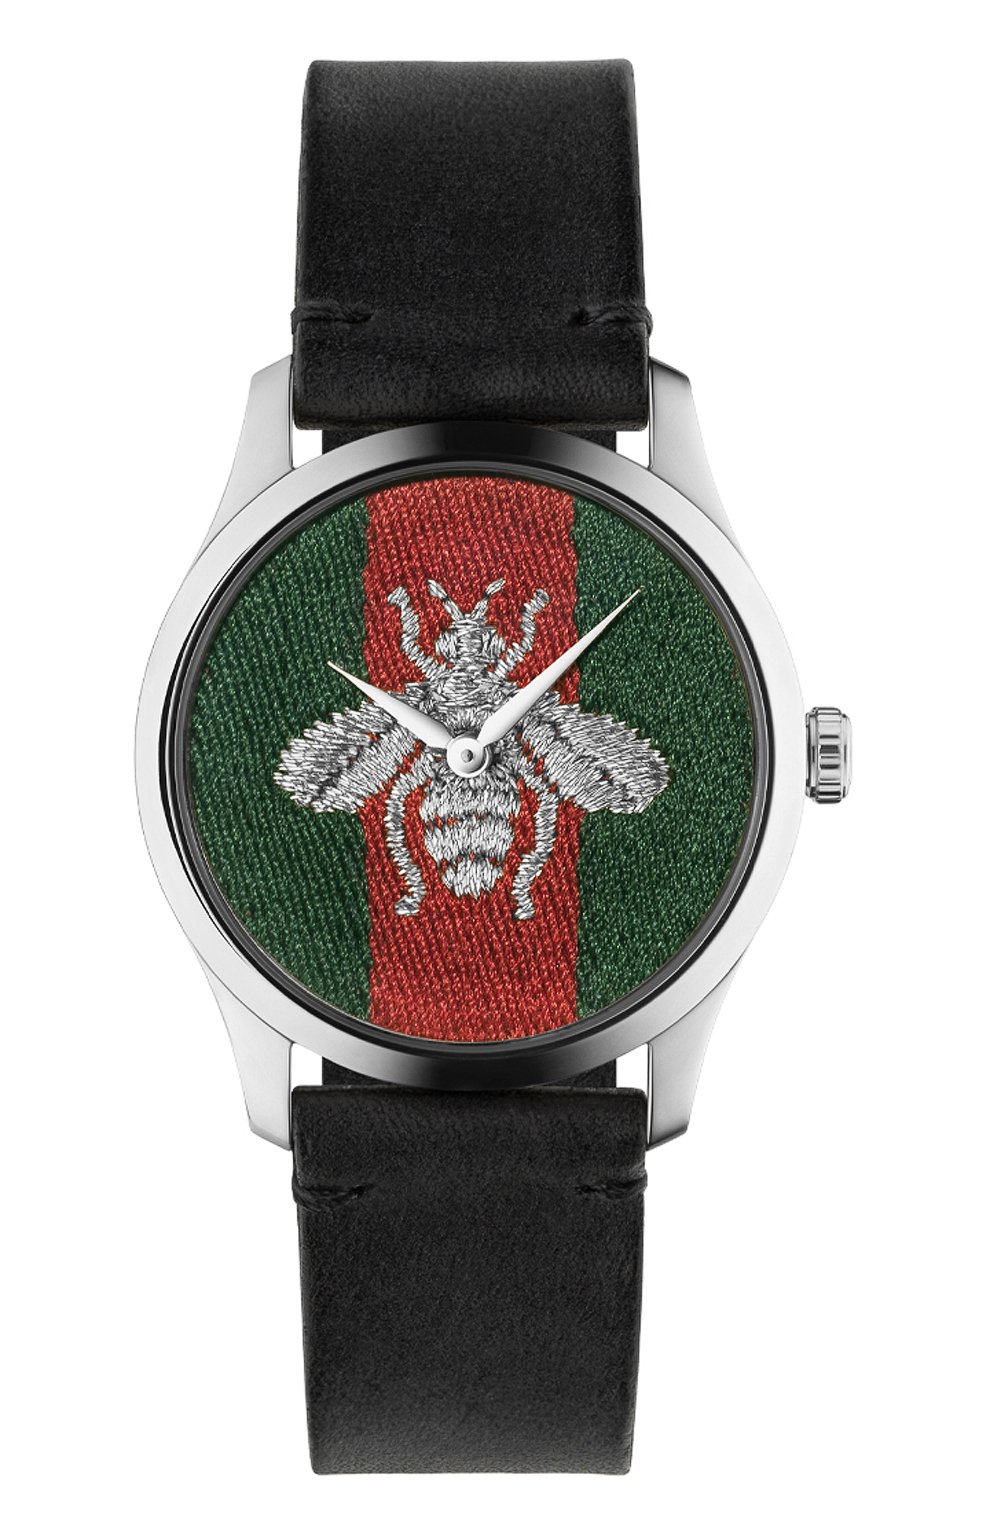 Швейцарские часы Gucci - купить оригинальные наручные часы в Киеве, цены в Timeshop